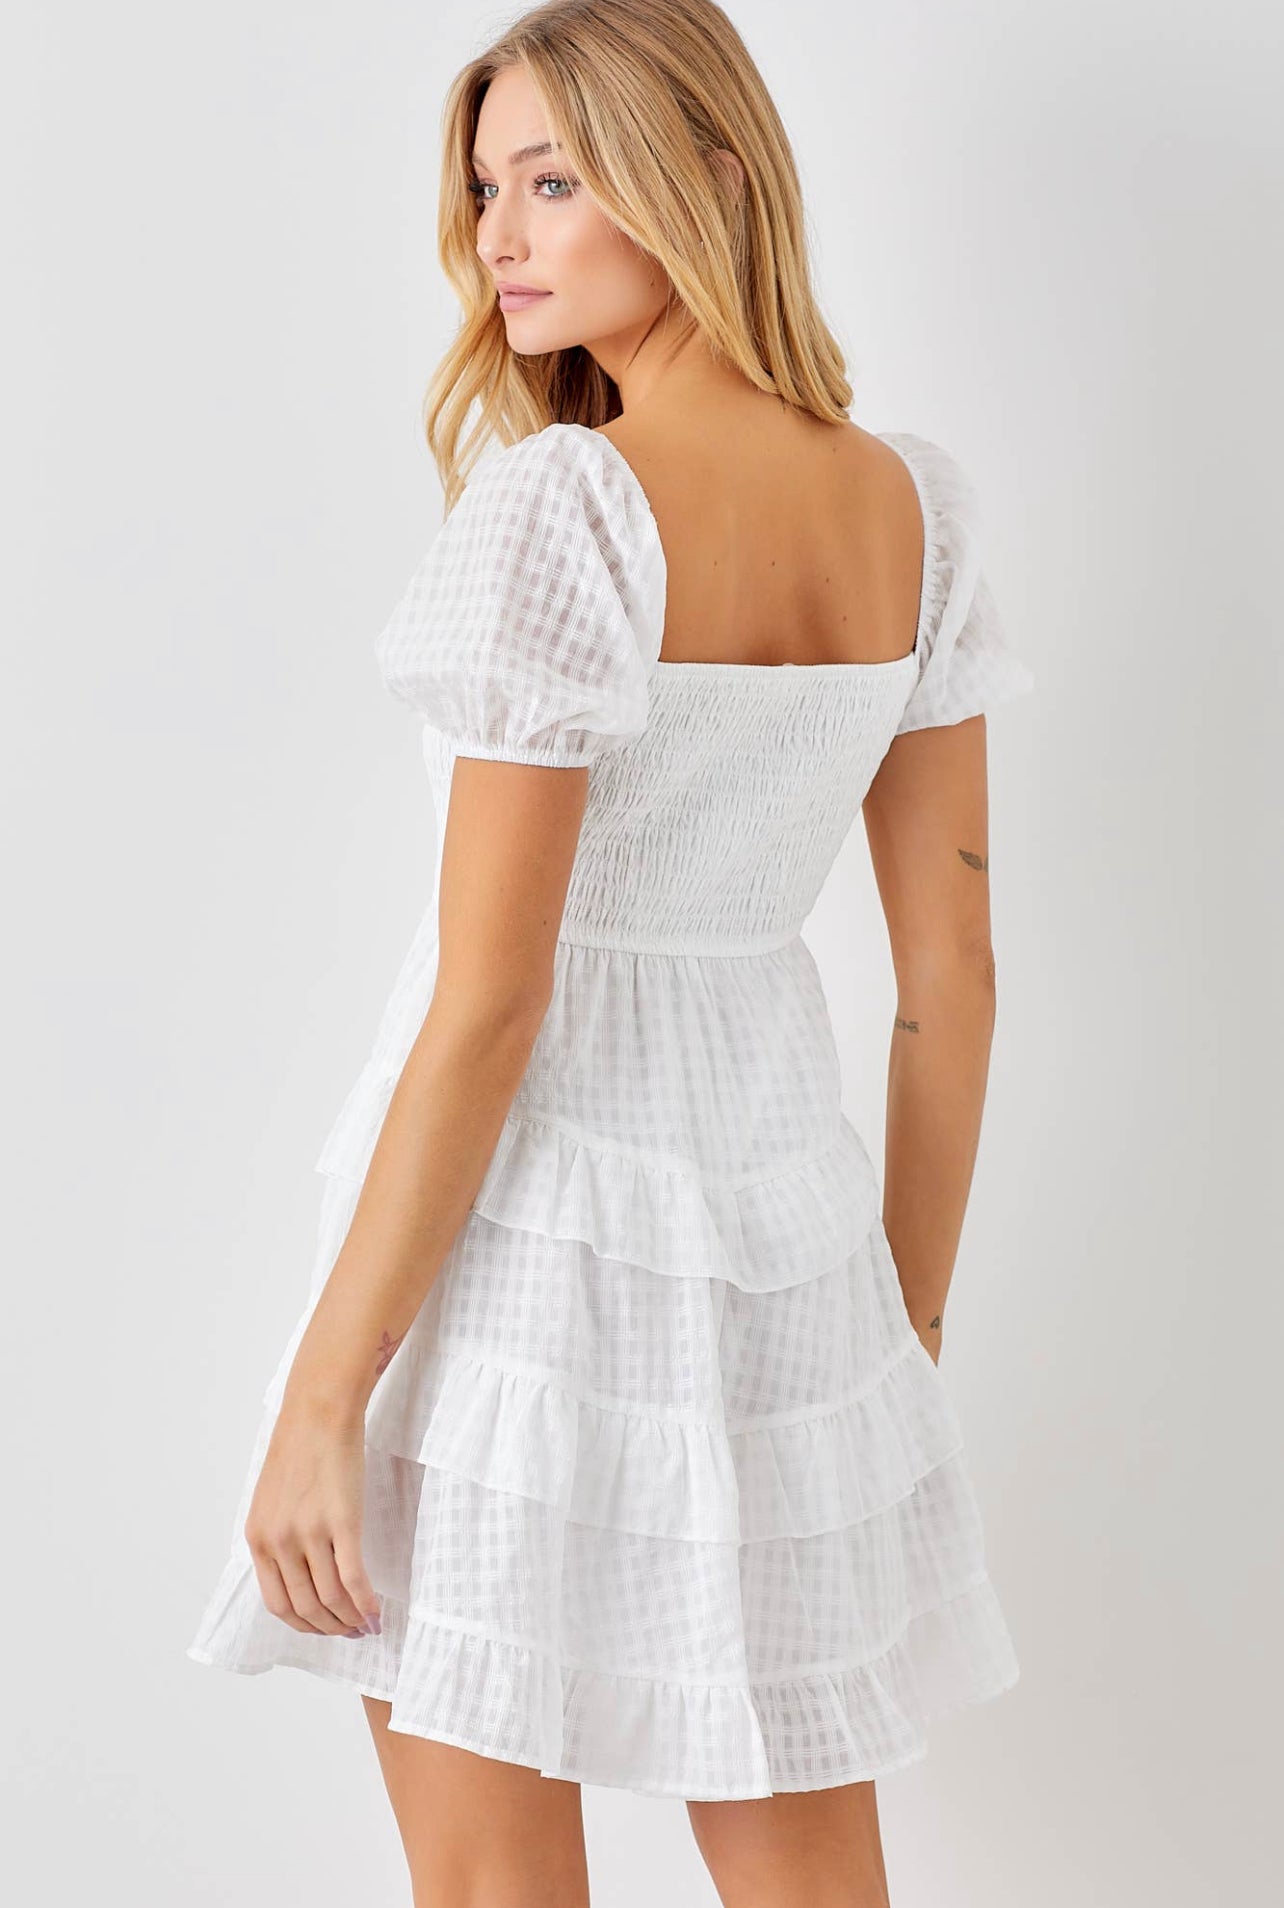 White Checkered Dress